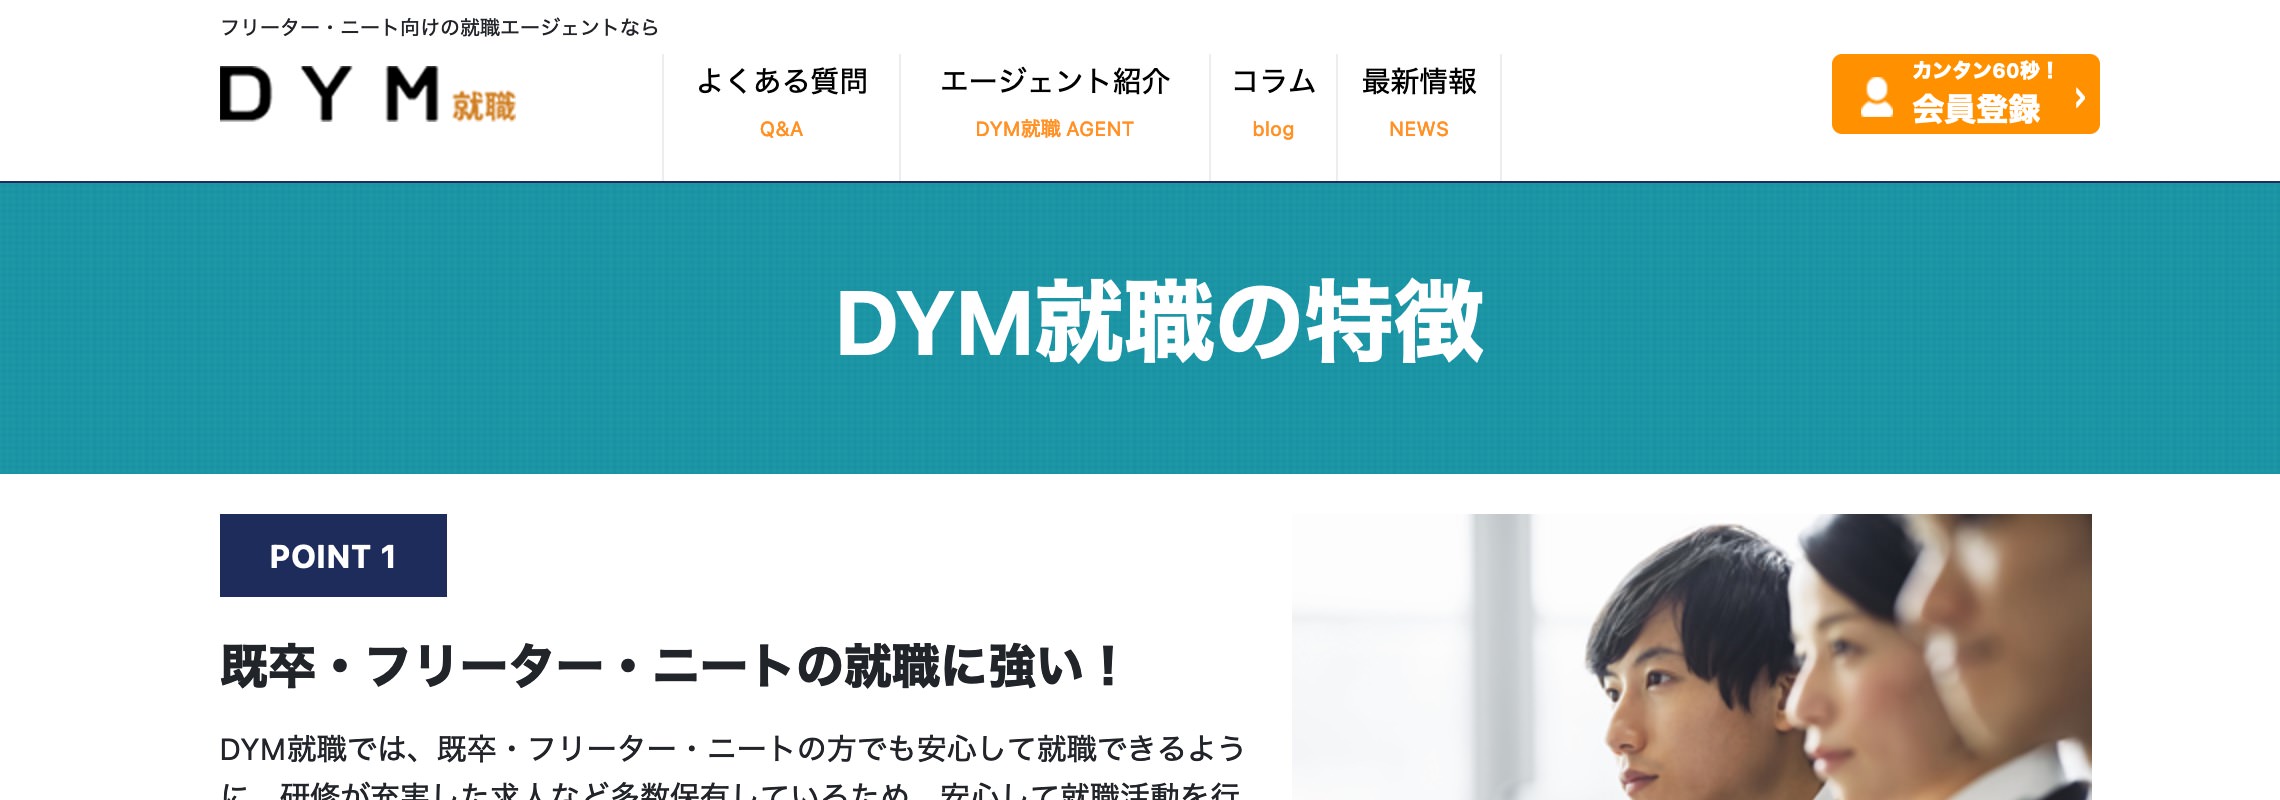 転職サイトDYM就職の公式ホームページ画像